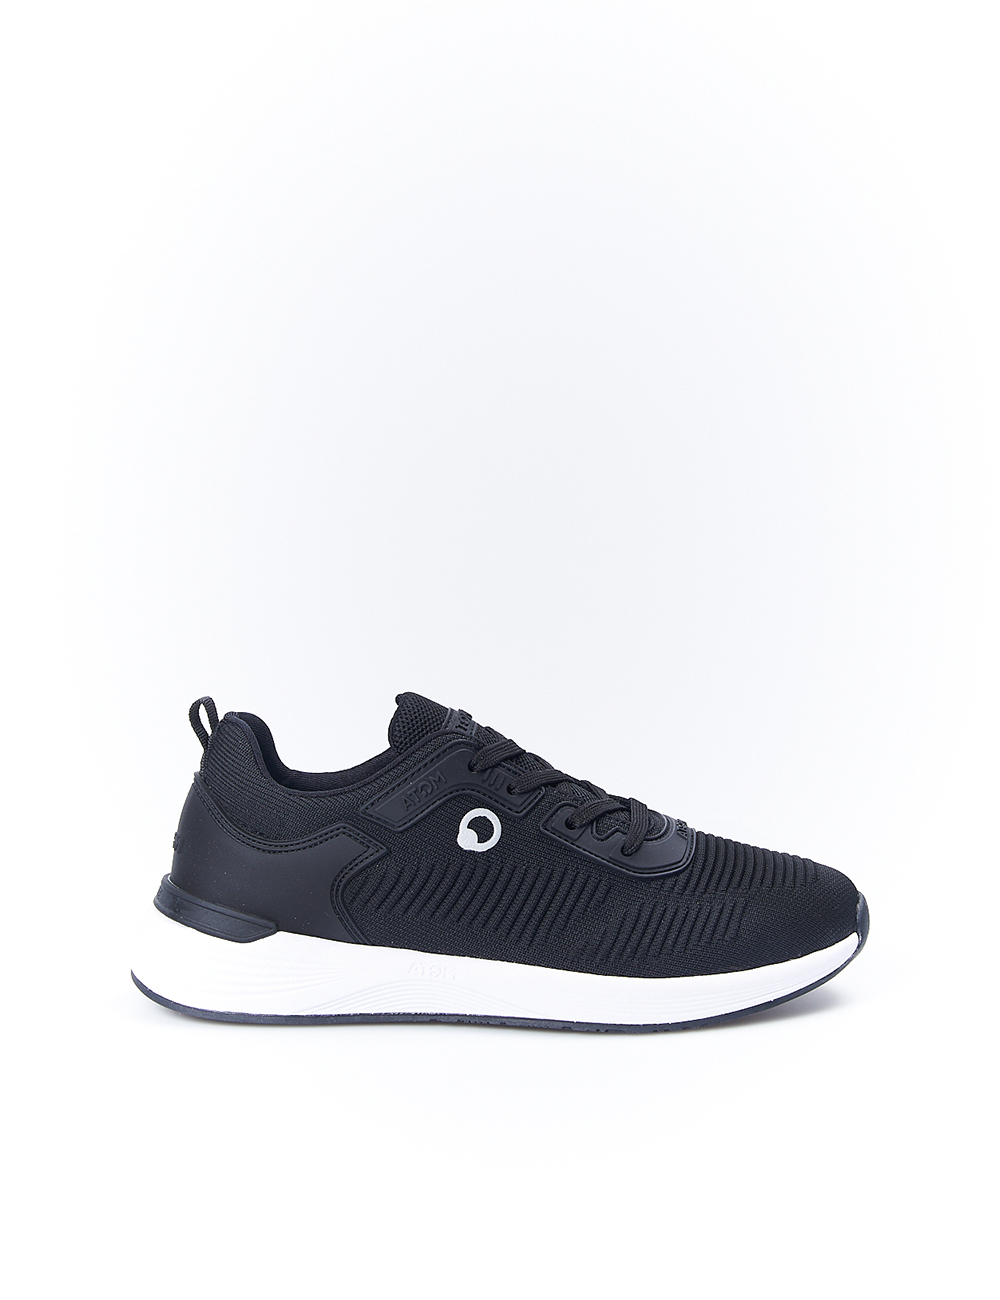 Zapatos Deportivos Atom By Fluchos At107 - negro - 